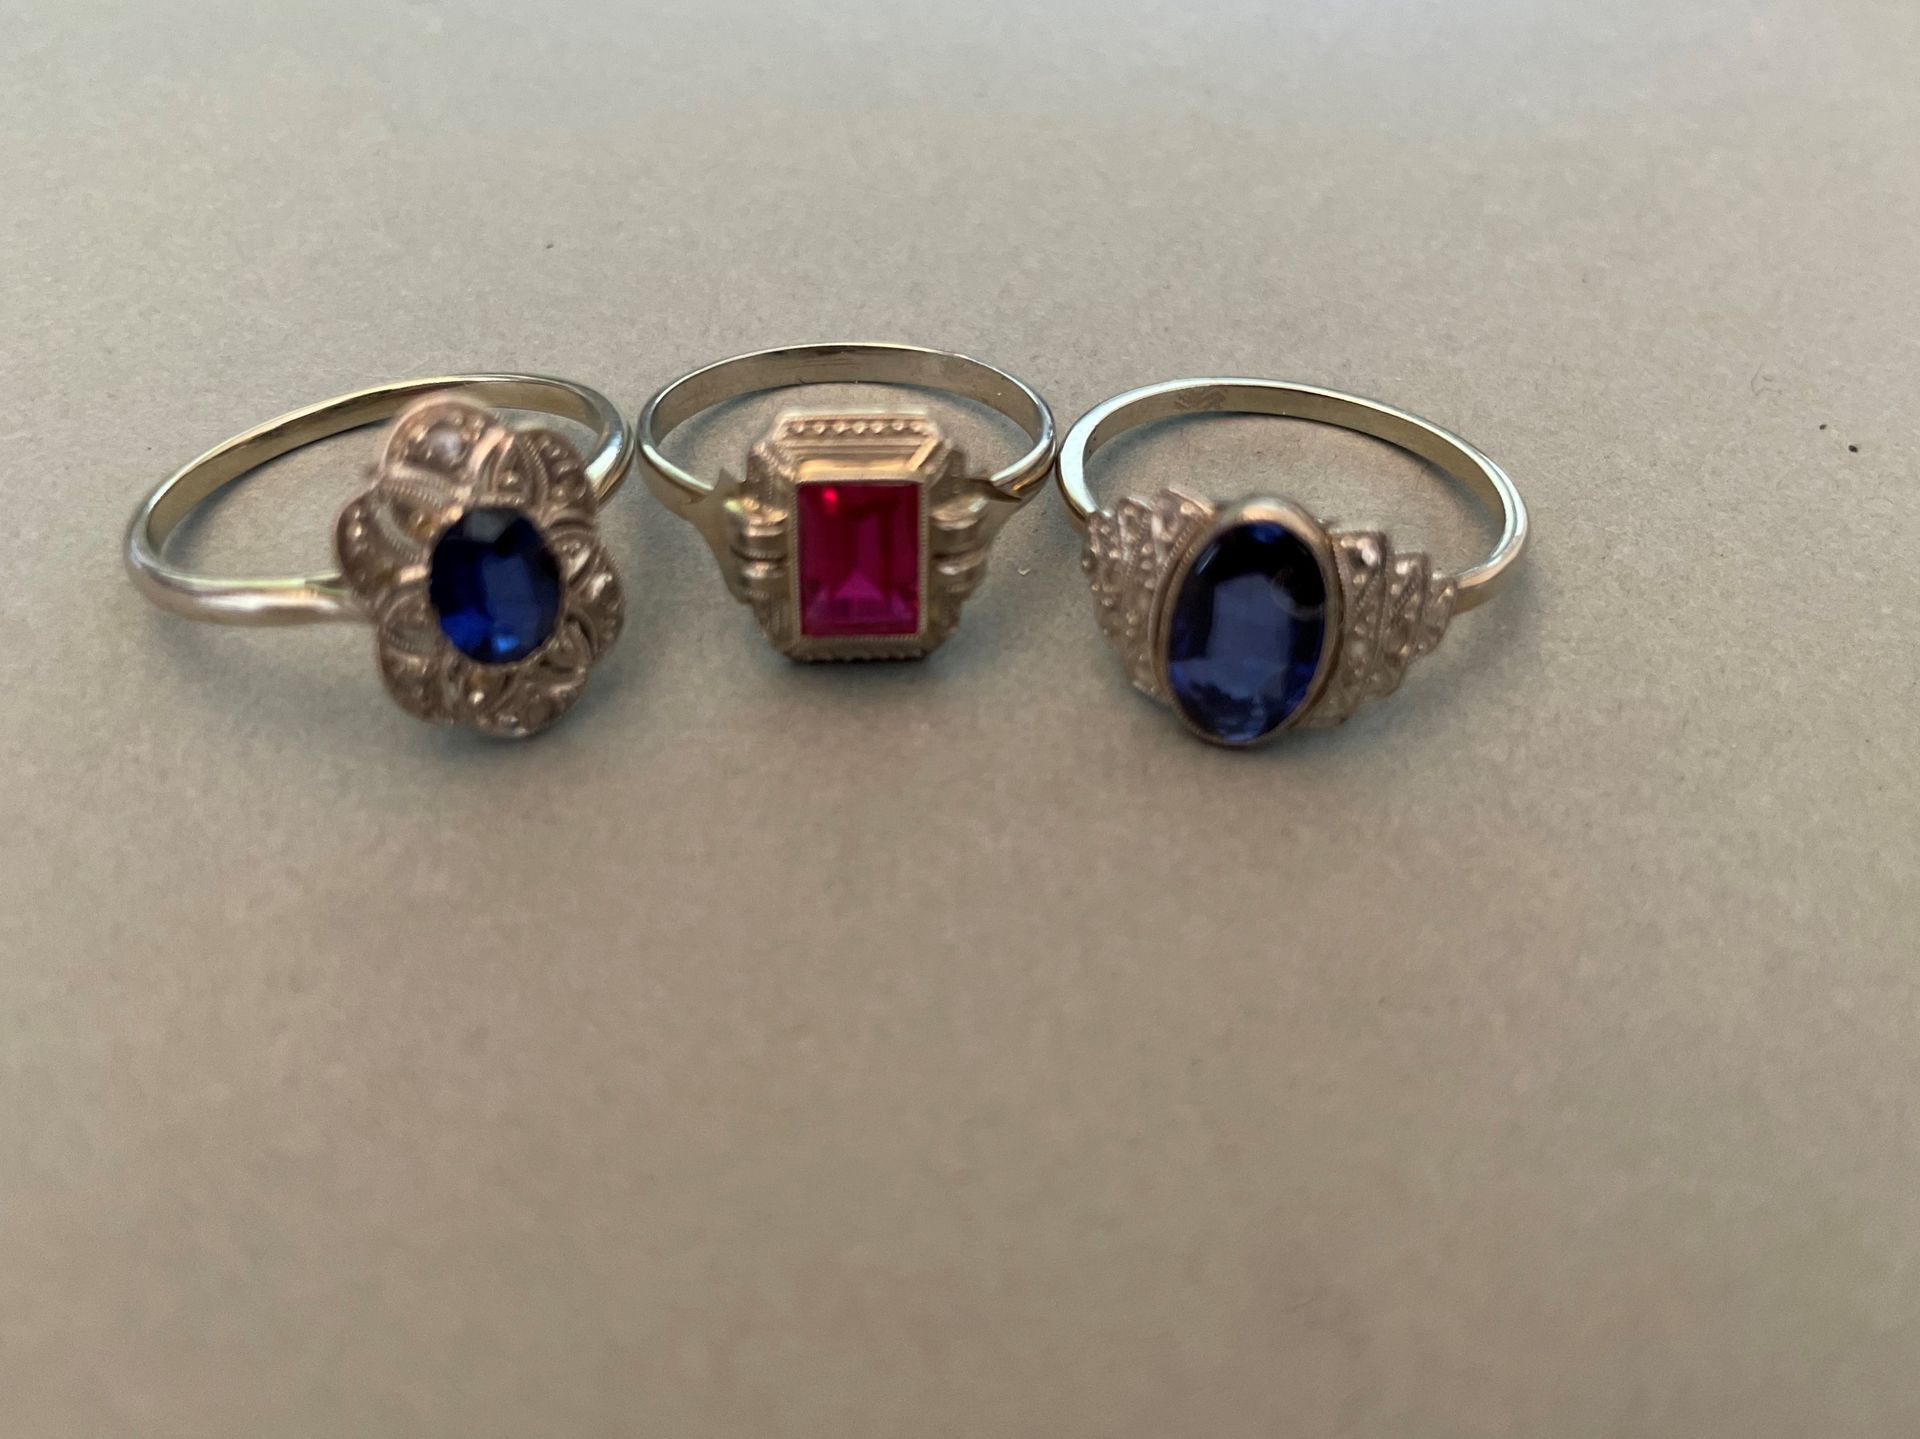 Null 三件古董戒指，分别镶嵌了一颗红宝石或合成蓝宝石，两件镶嵌了玫瑰式切割钻石。

玫瑰式切割钻石。白金和铂金镶嵌。

总重量：7.3克。